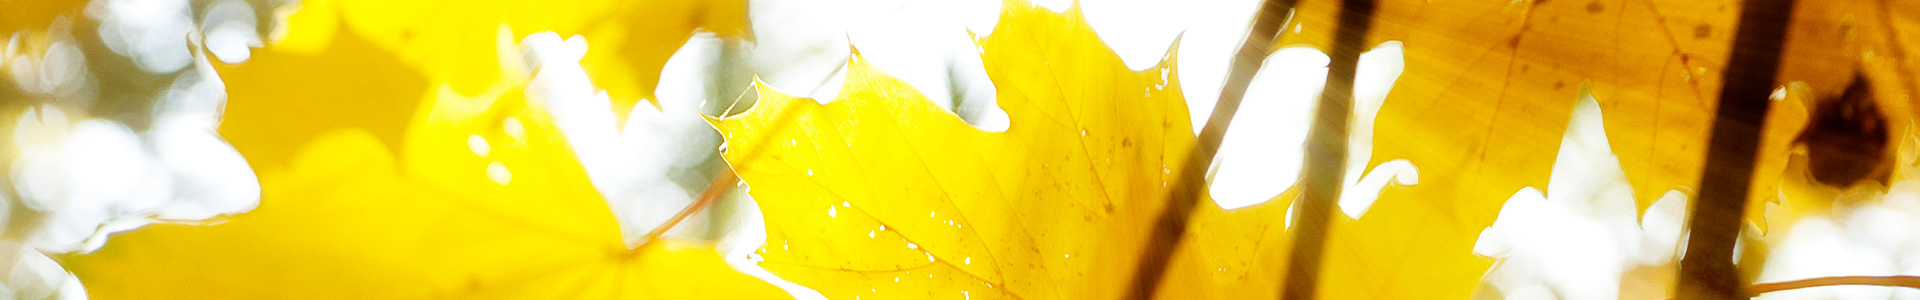 Baum im Herbst - © Reinhard Podolsky/mediadesign